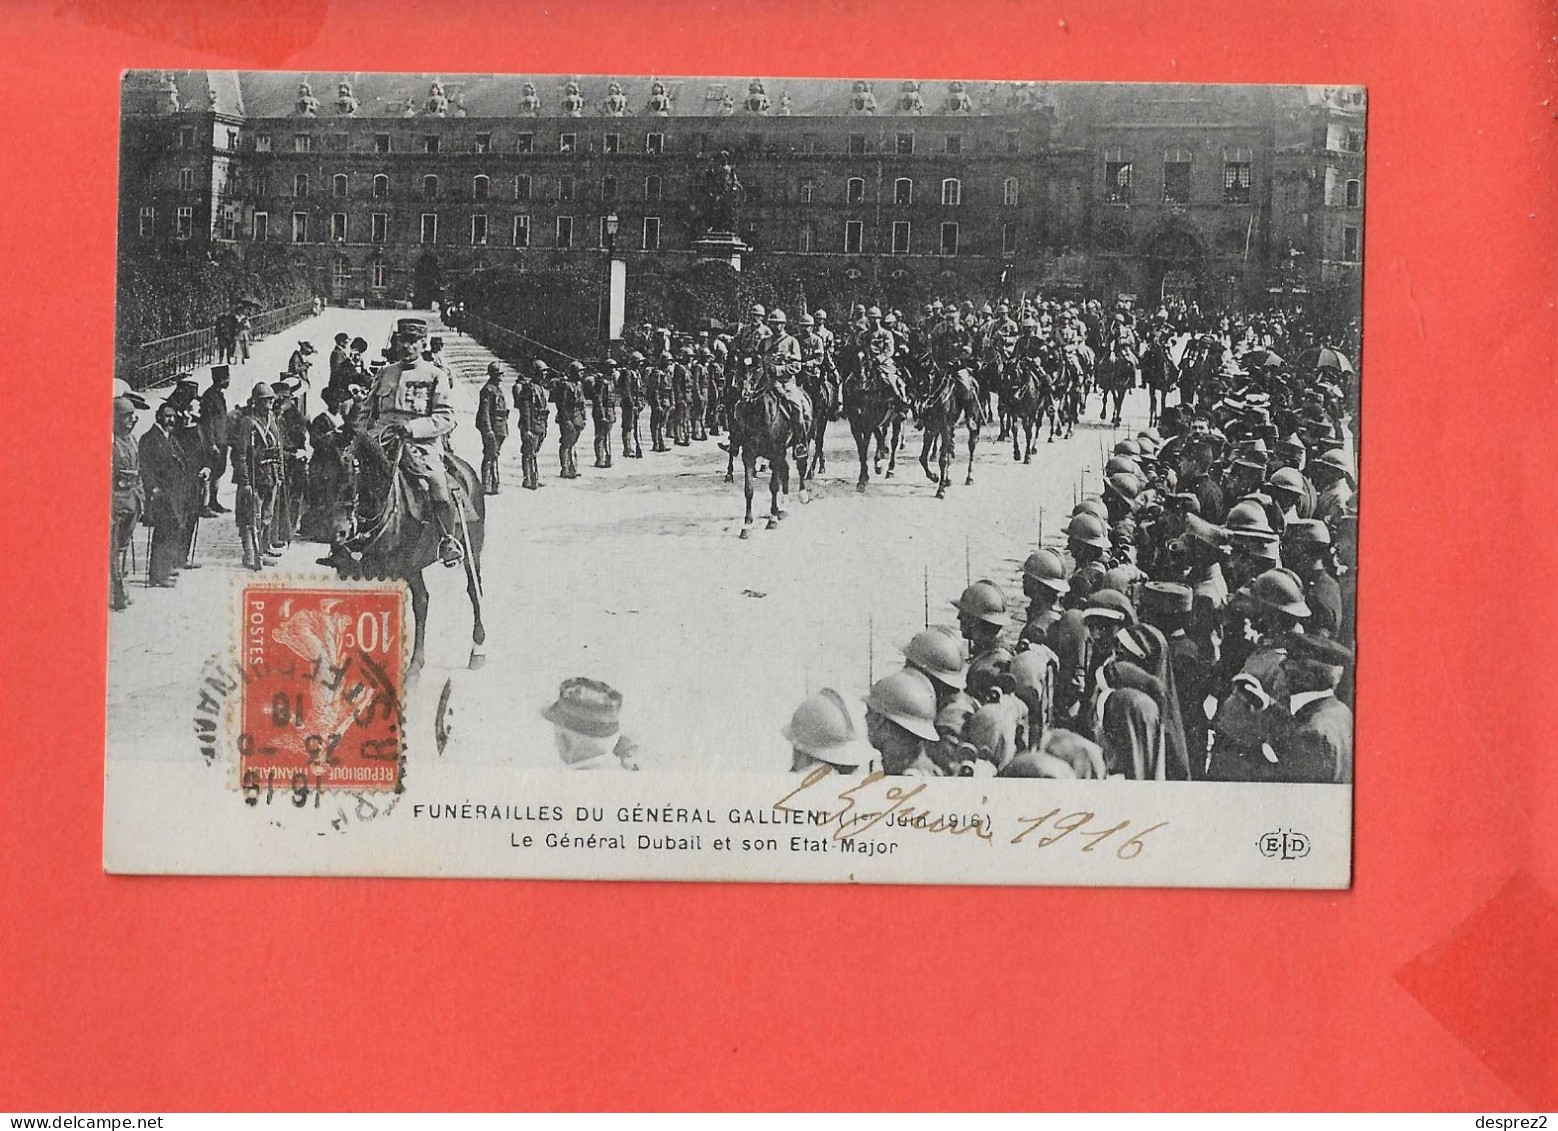 FUNERAILLES Du Général GALLIENI Cpa Animée Le 1 Er Juin 1916 - Funerali